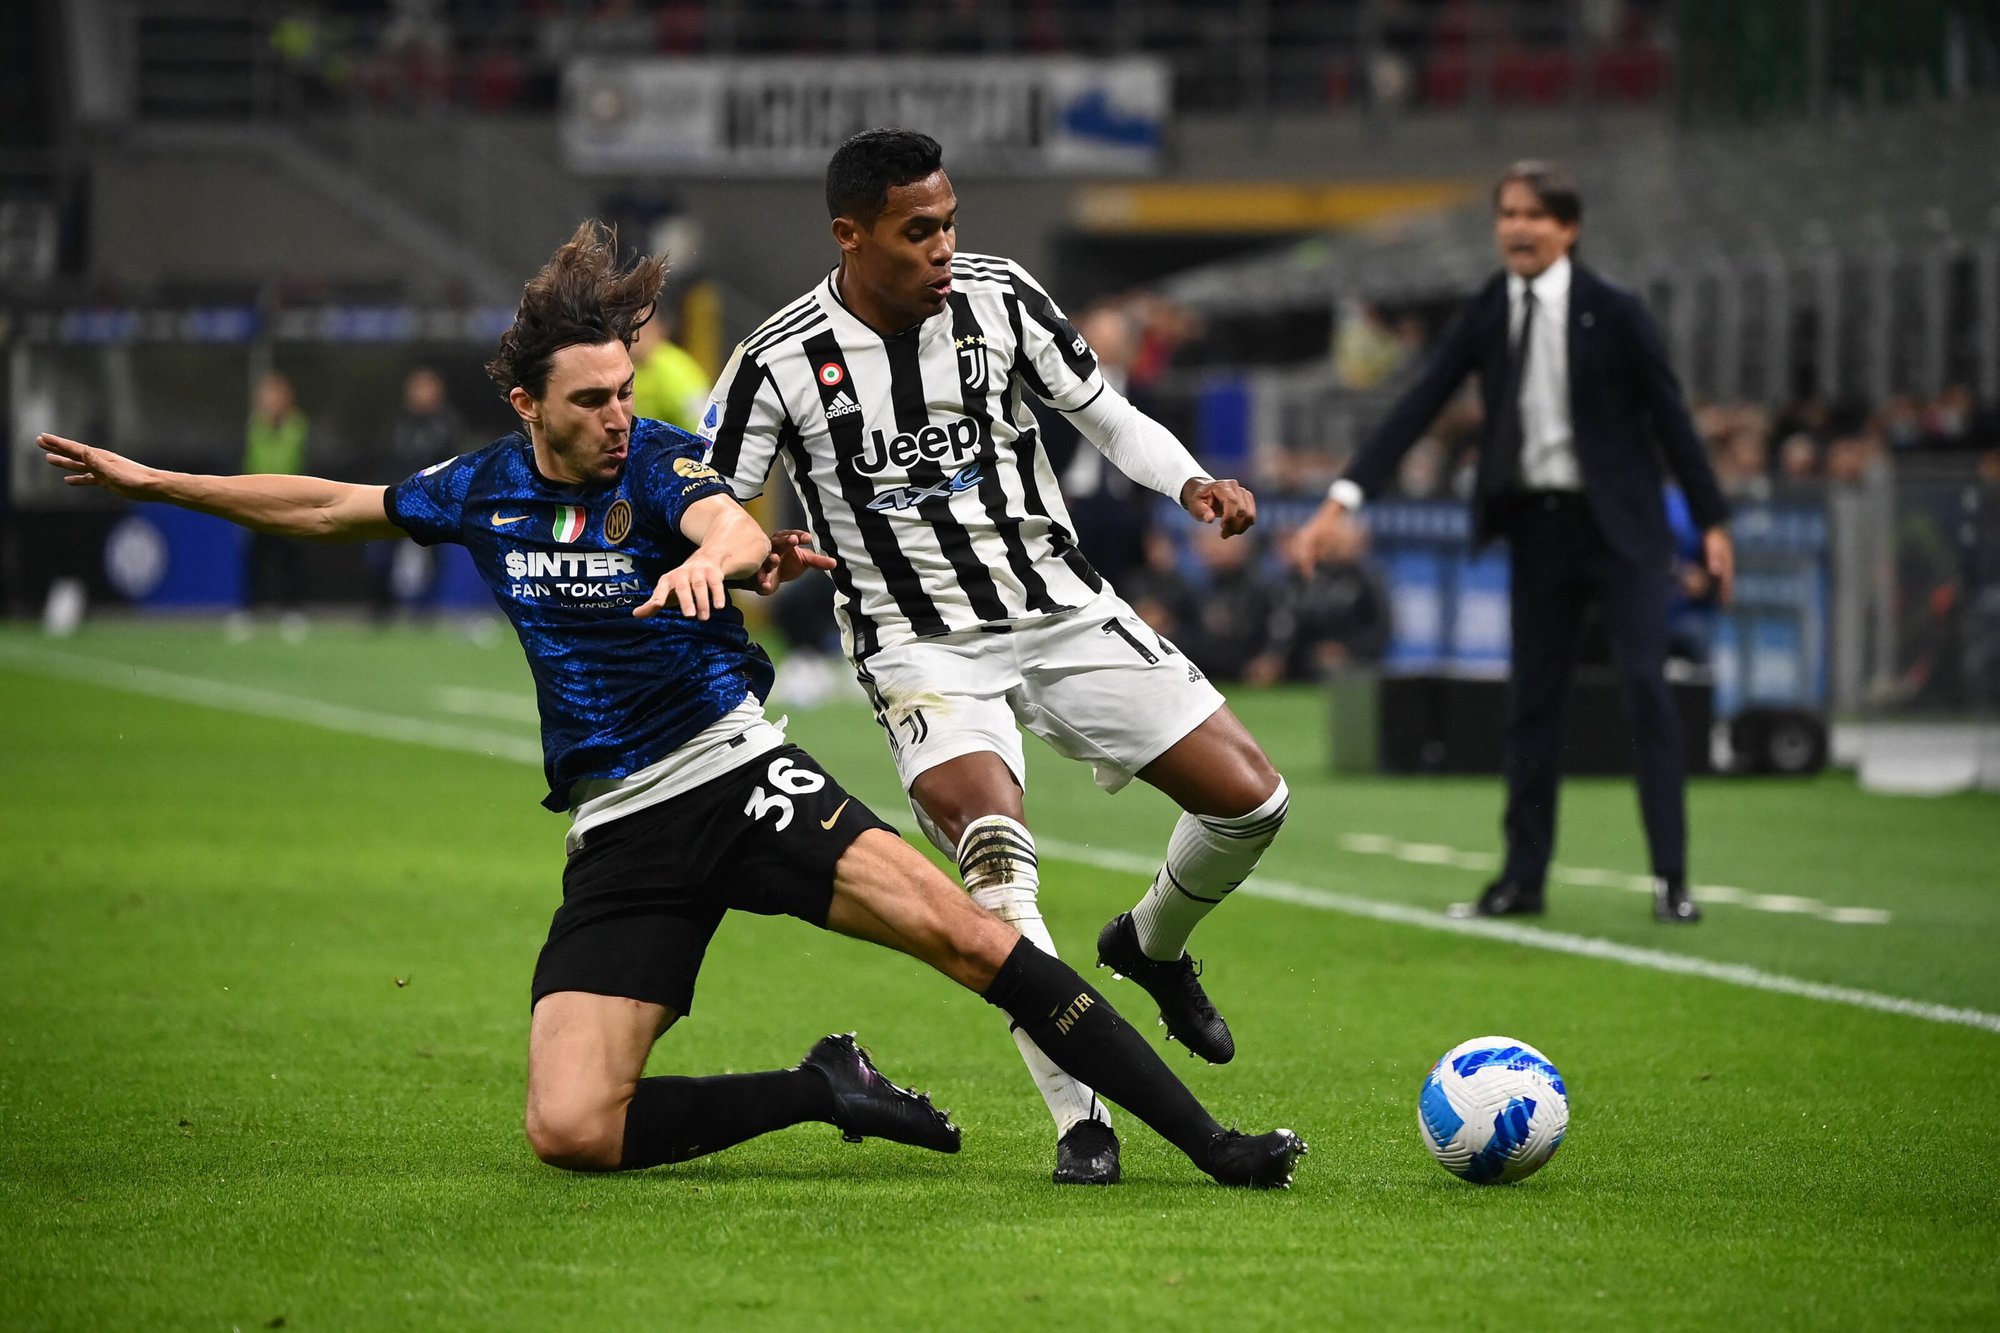 Nhận định bóng đá Juventus vs Inter, 2h ngày 5/4 - Bán kết Coppa Italia: Chiến thắng cho 'Lão Bà'?